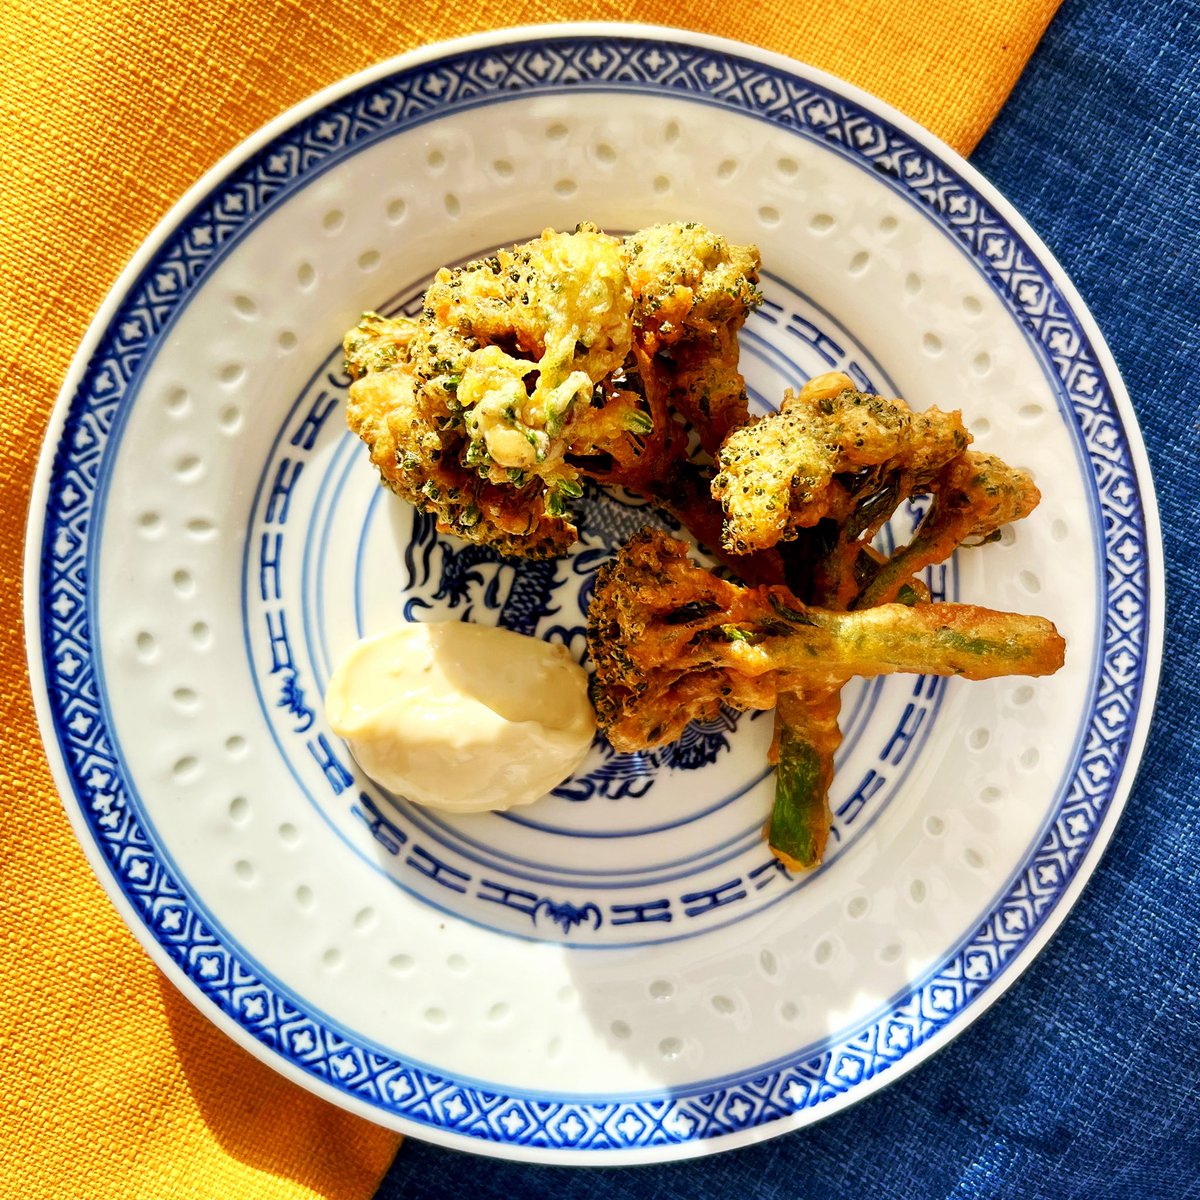 Cauliflower fritters (using broccoli) with garlic mayo. 
Recipe by @Olia_Hercules 
#cookforukraine #standwithukraine #chefsforukraine